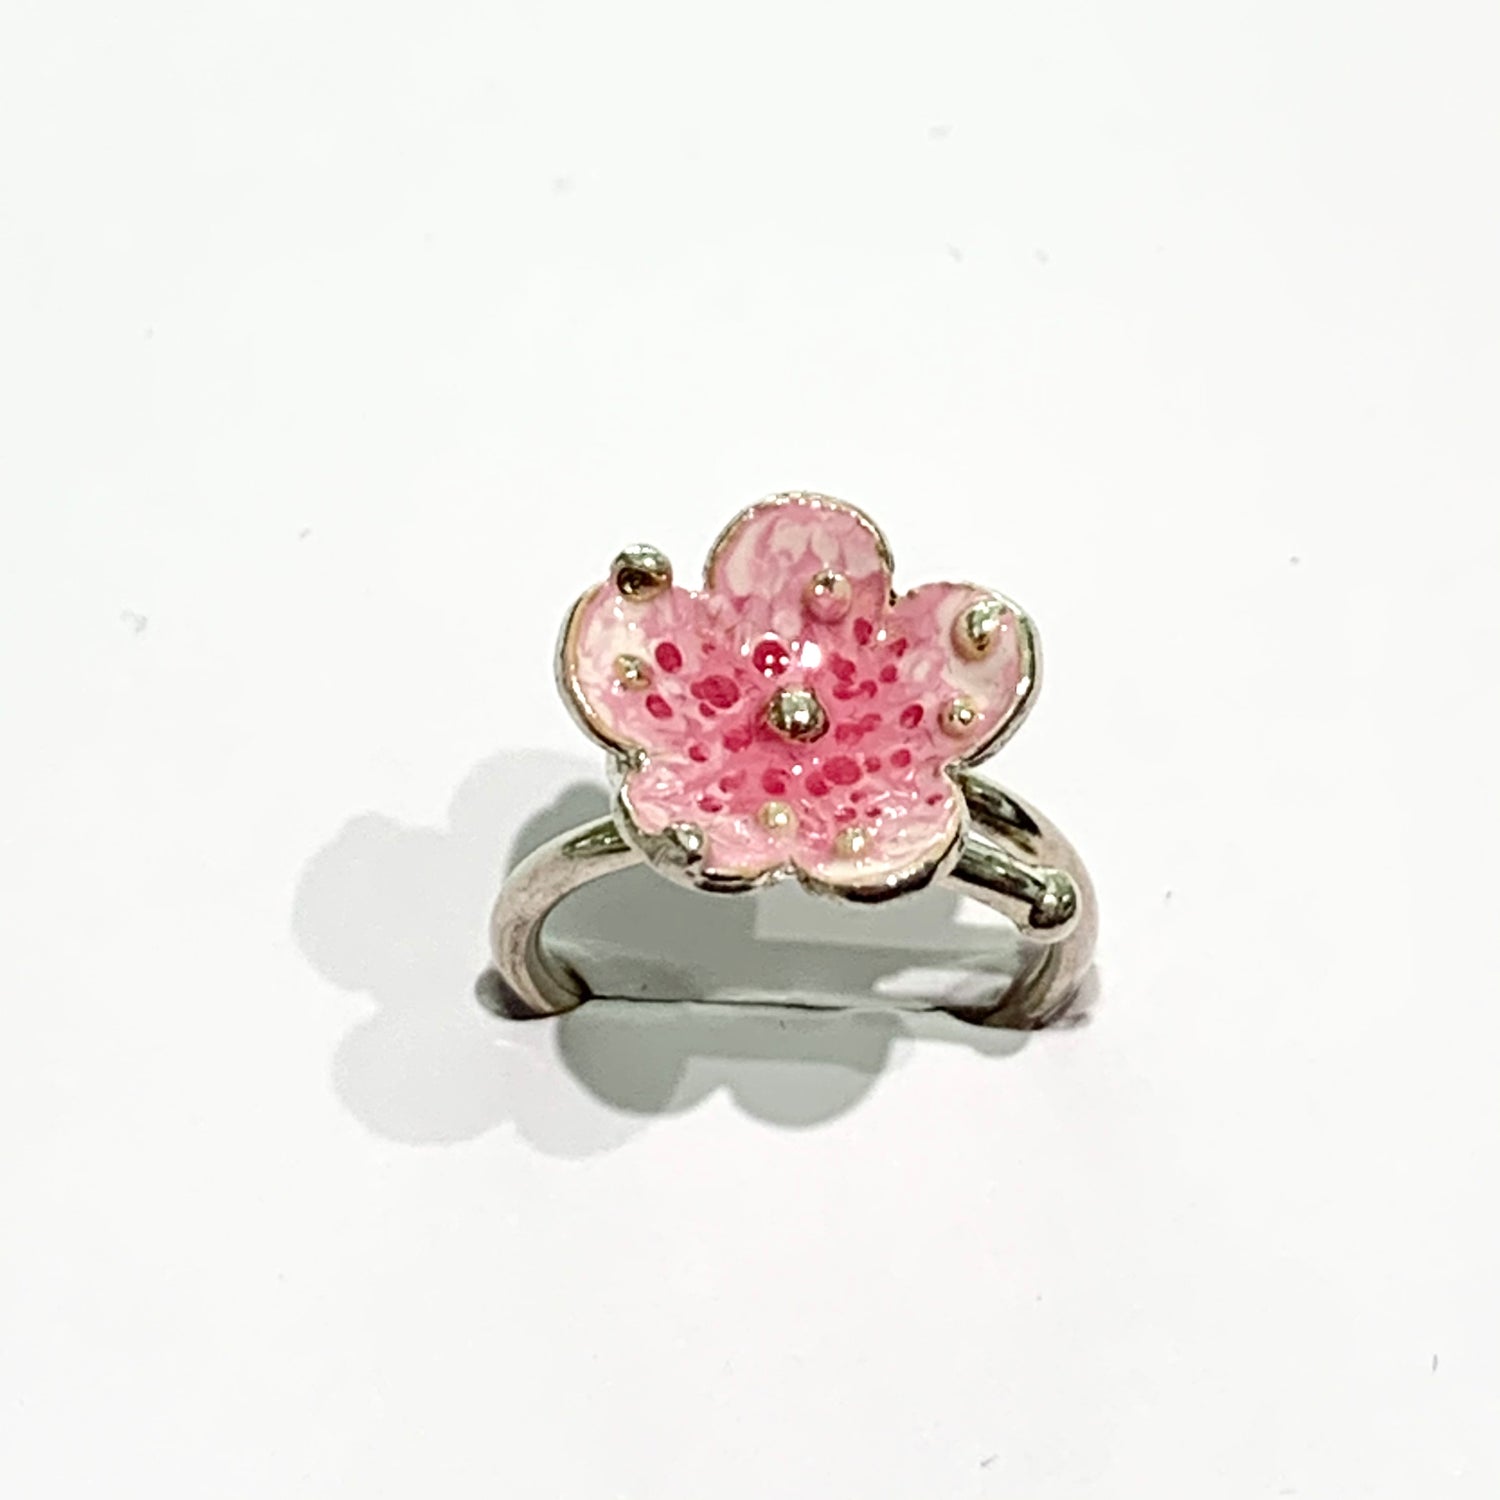 Anello in argento con fiore lavorato e smaltato a mano con sfumature.  Dimensioni fiore 1,3 cm.  Disponibile in due colori: rosa e avorio/rosa antico.